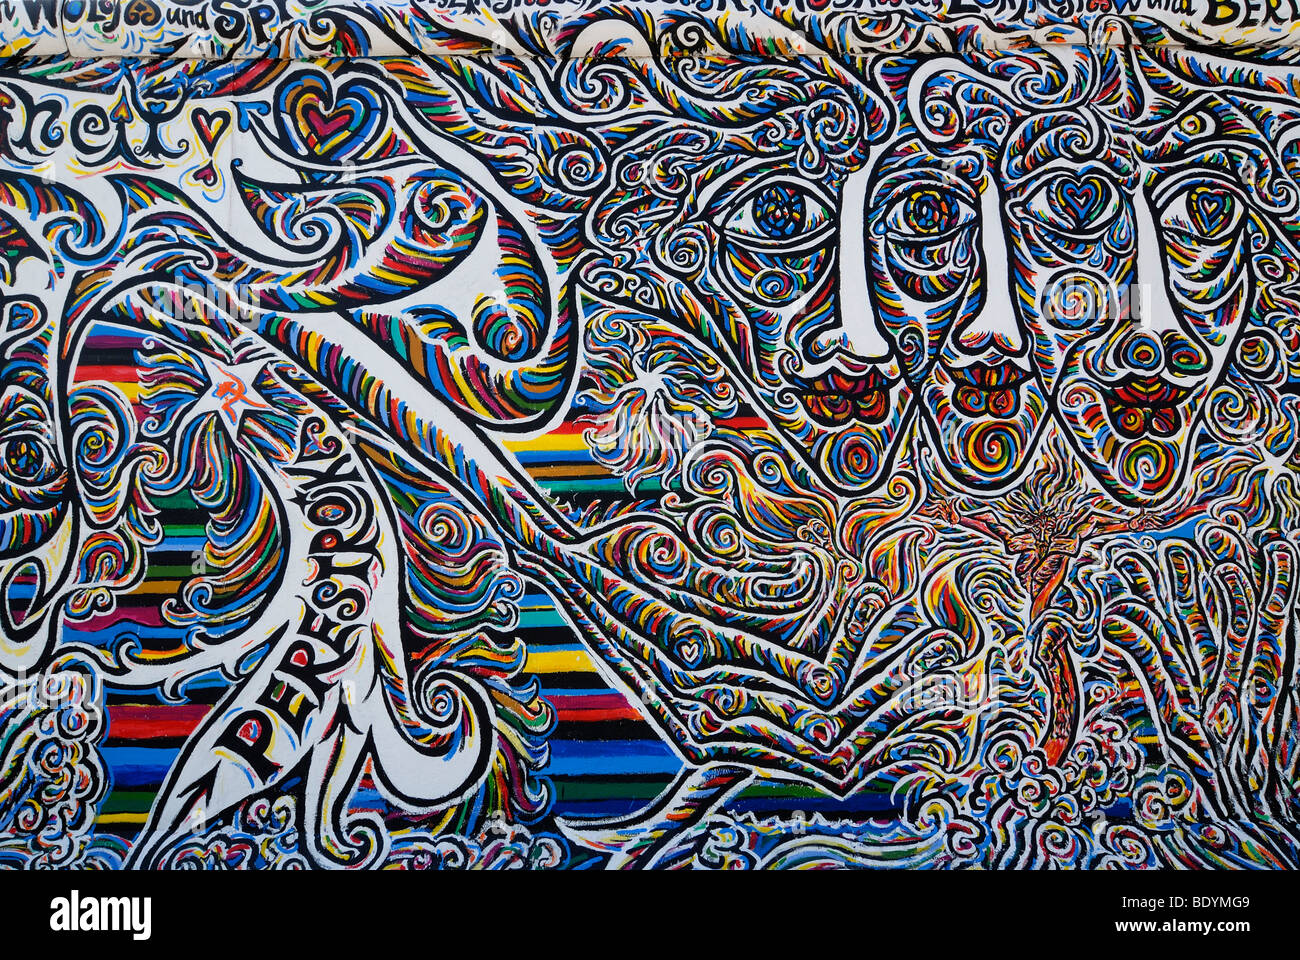 Work of art on the Berlin Wall, Eastside Gallery, Graffiti, Berlin, Germany, Europe Stock Photo